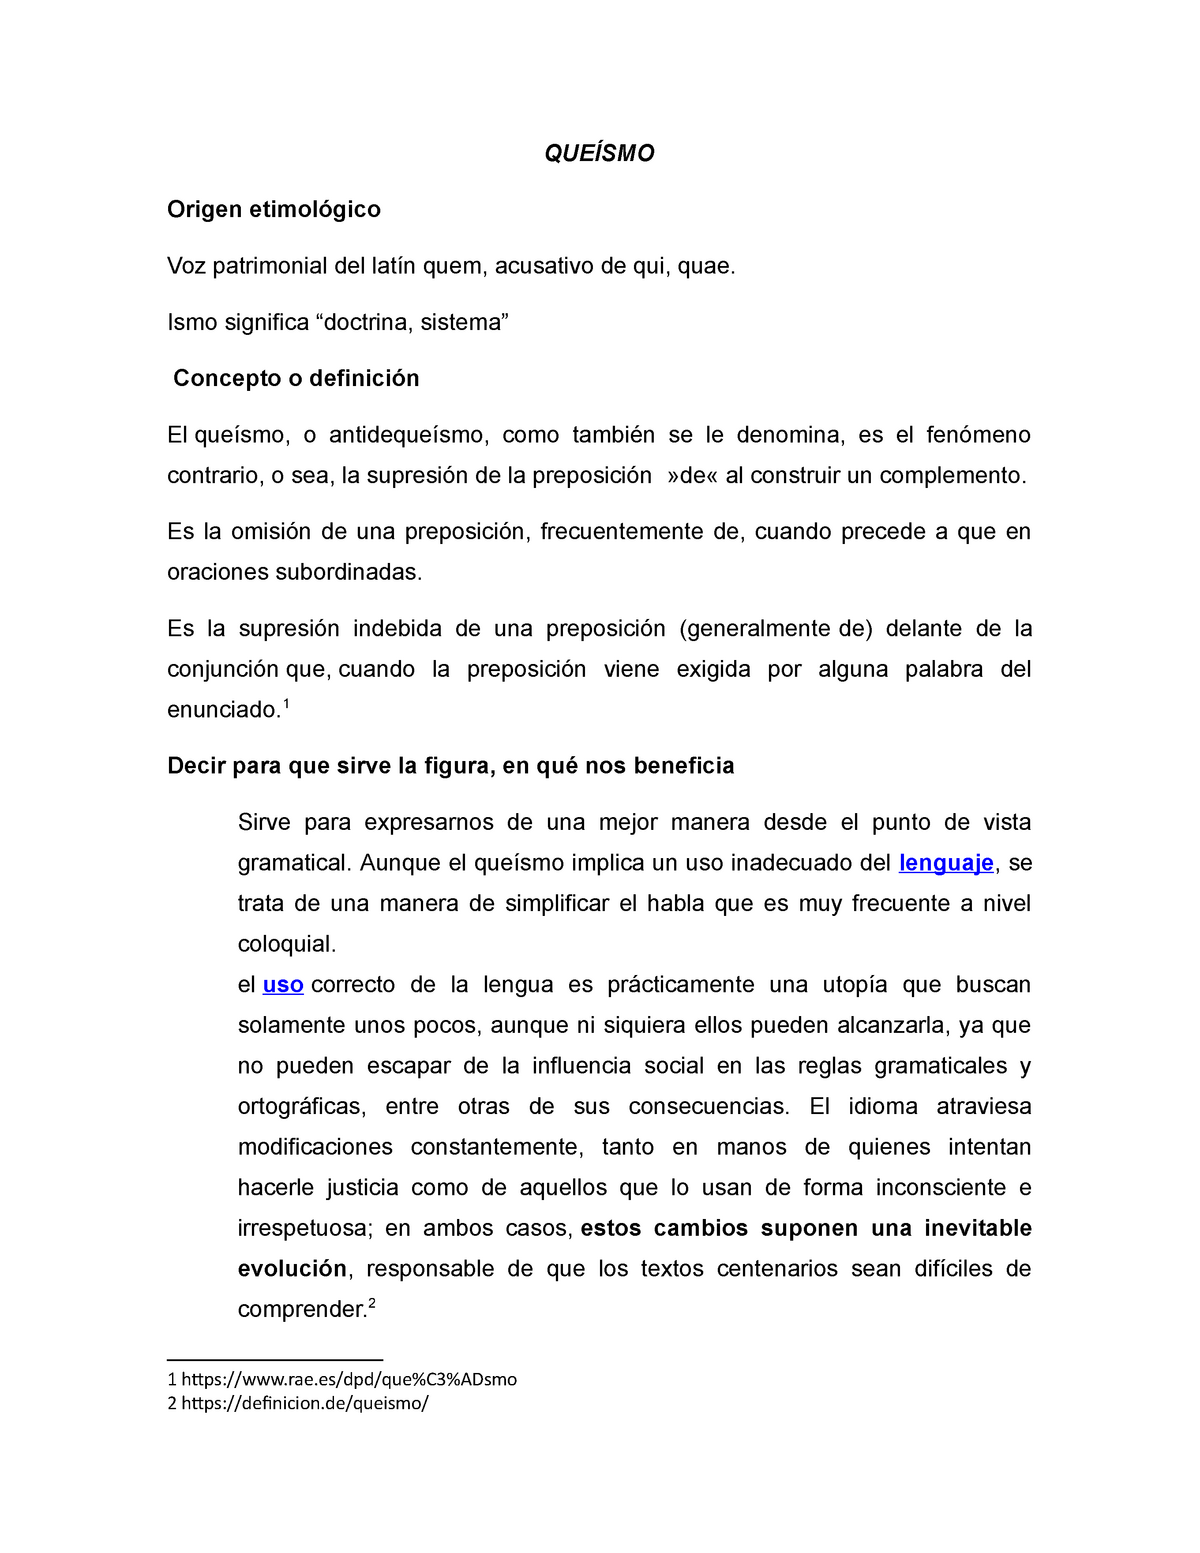 Queísmo - Apuntes 1 - Técnicas de Expresión Oral y Escrita - UNAM - Studocu